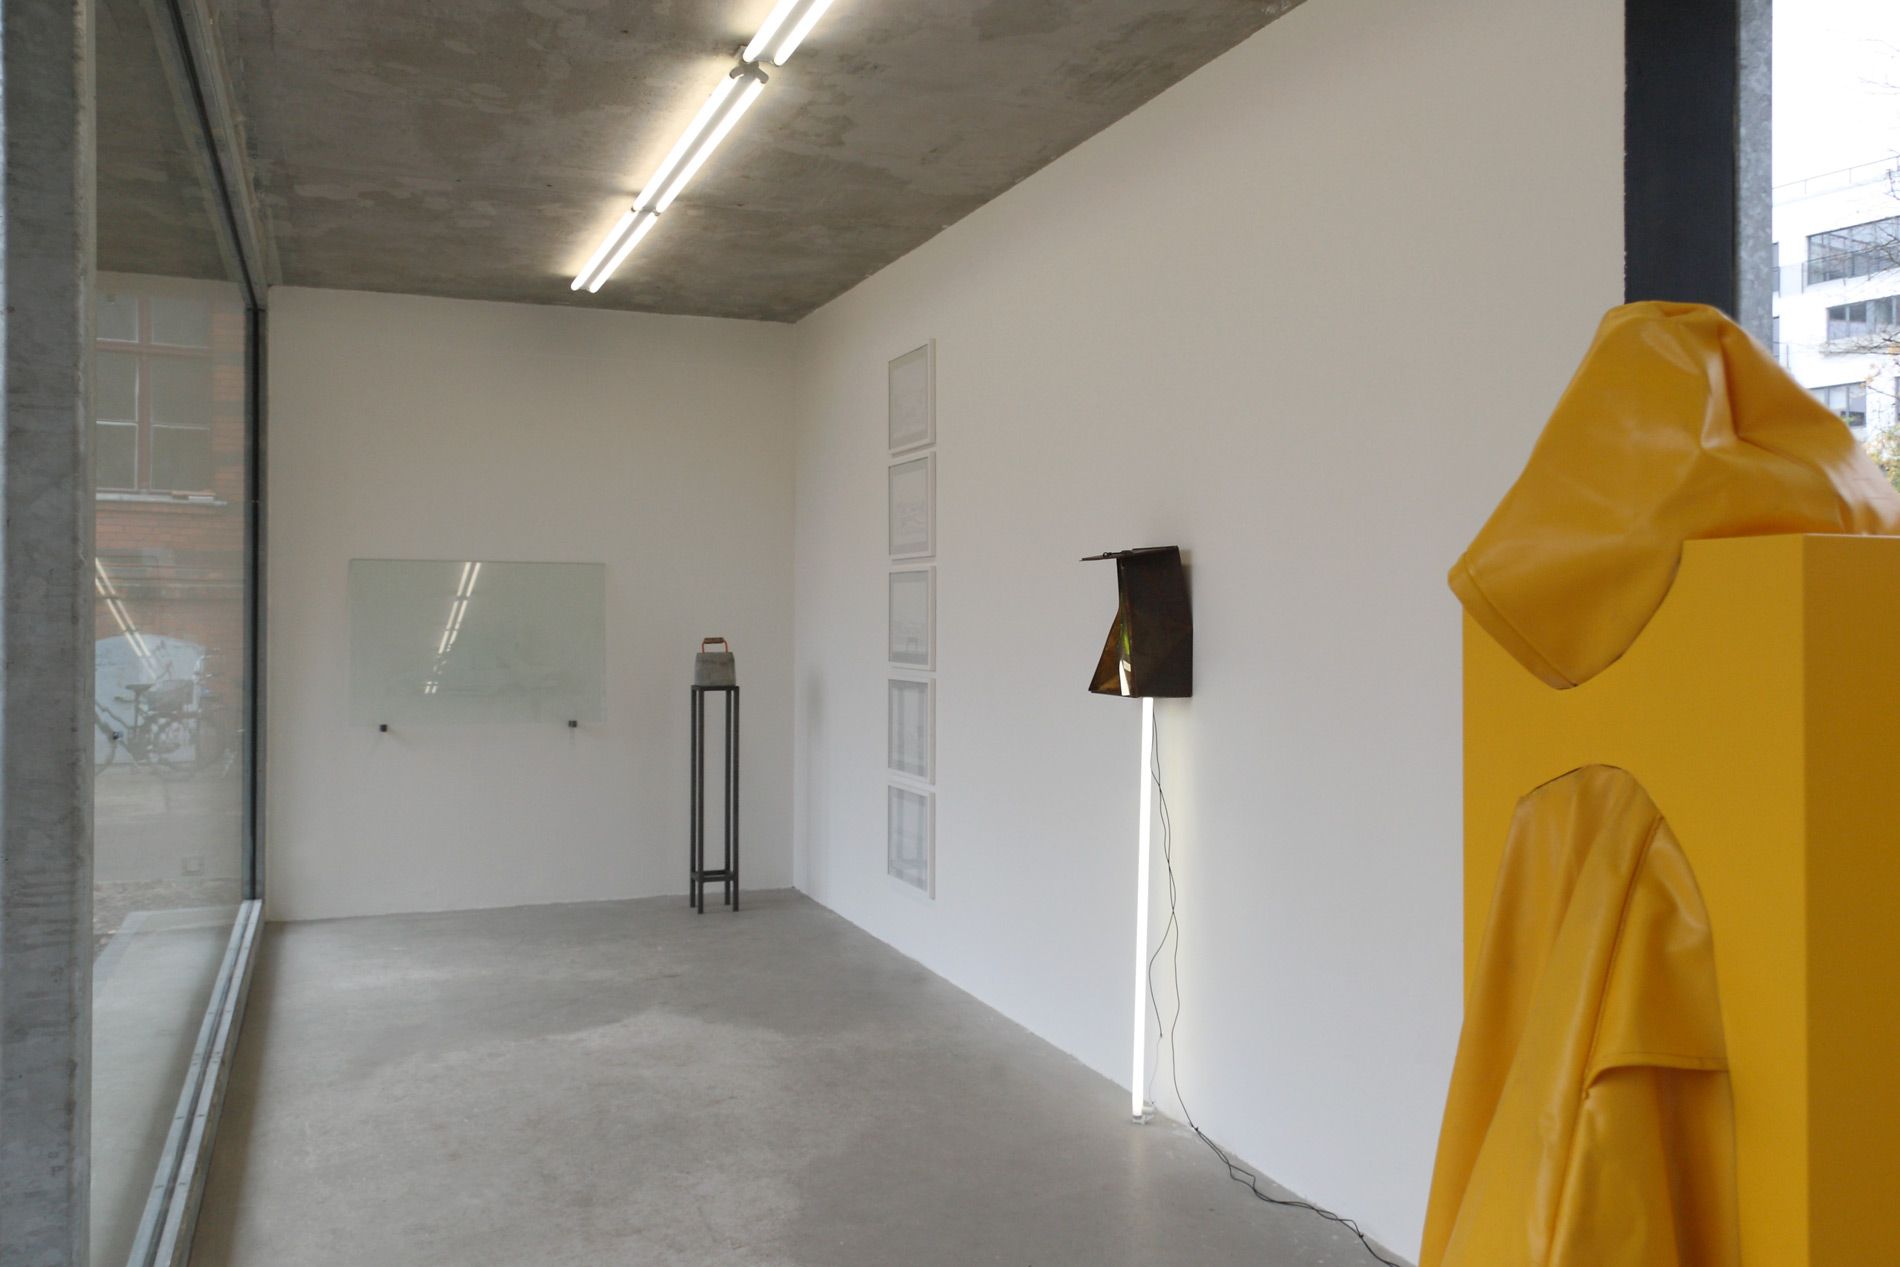 Michael Göbel - Ausstellung "Sic Semper Tyrannis" - Pavillon im Milchhof, Berlin, 2013